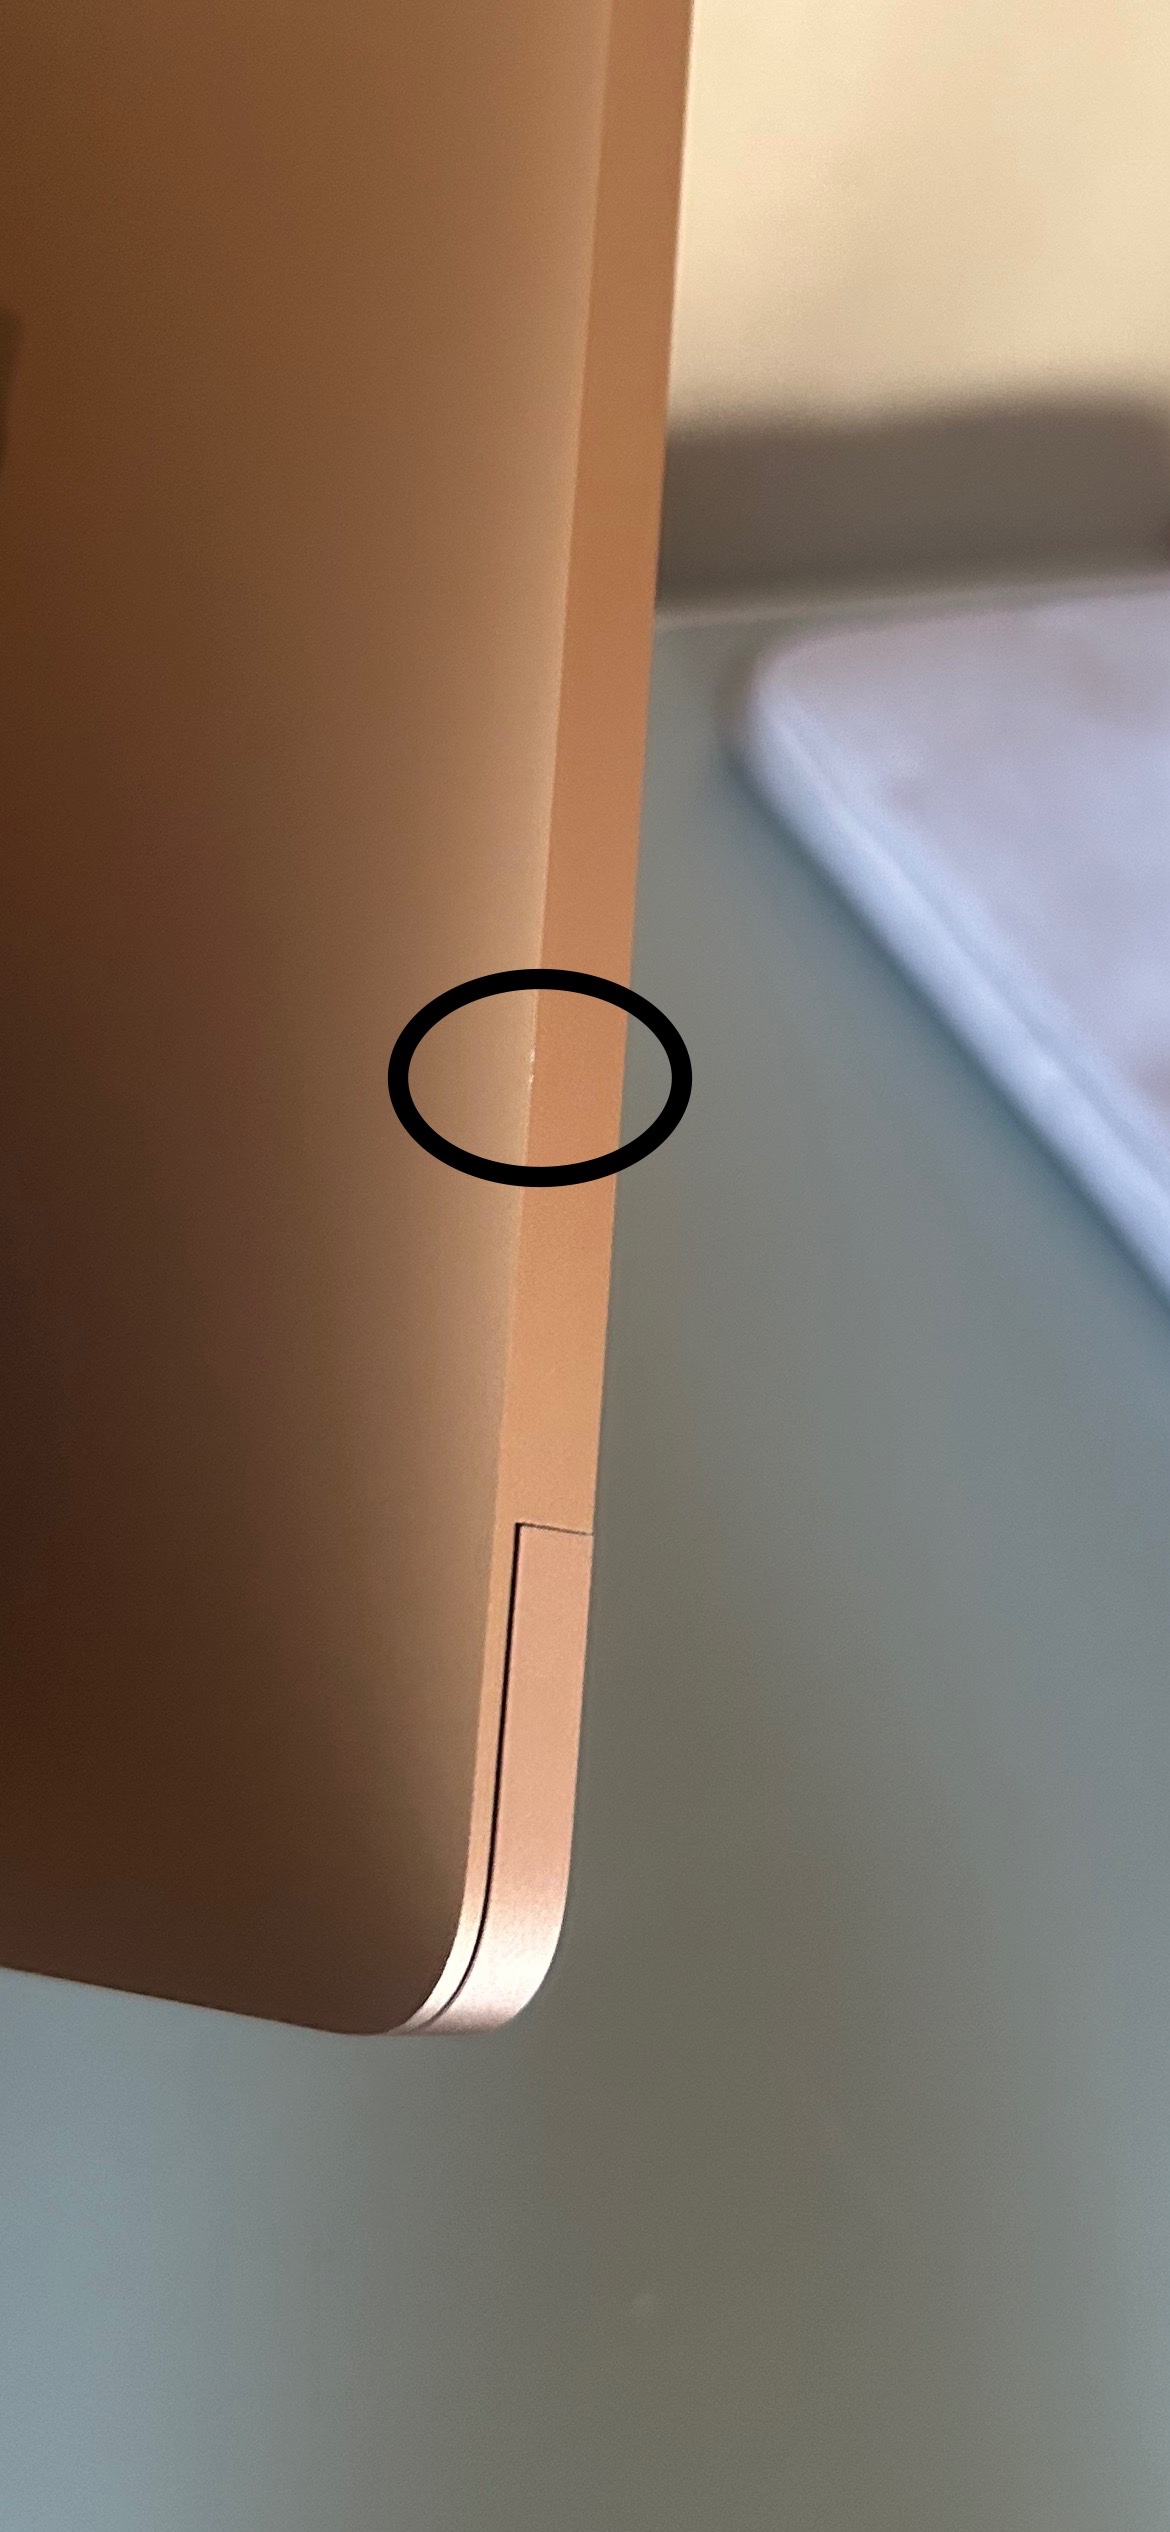 MacBook についた小さな傷を修復… - Apple コミュニティ